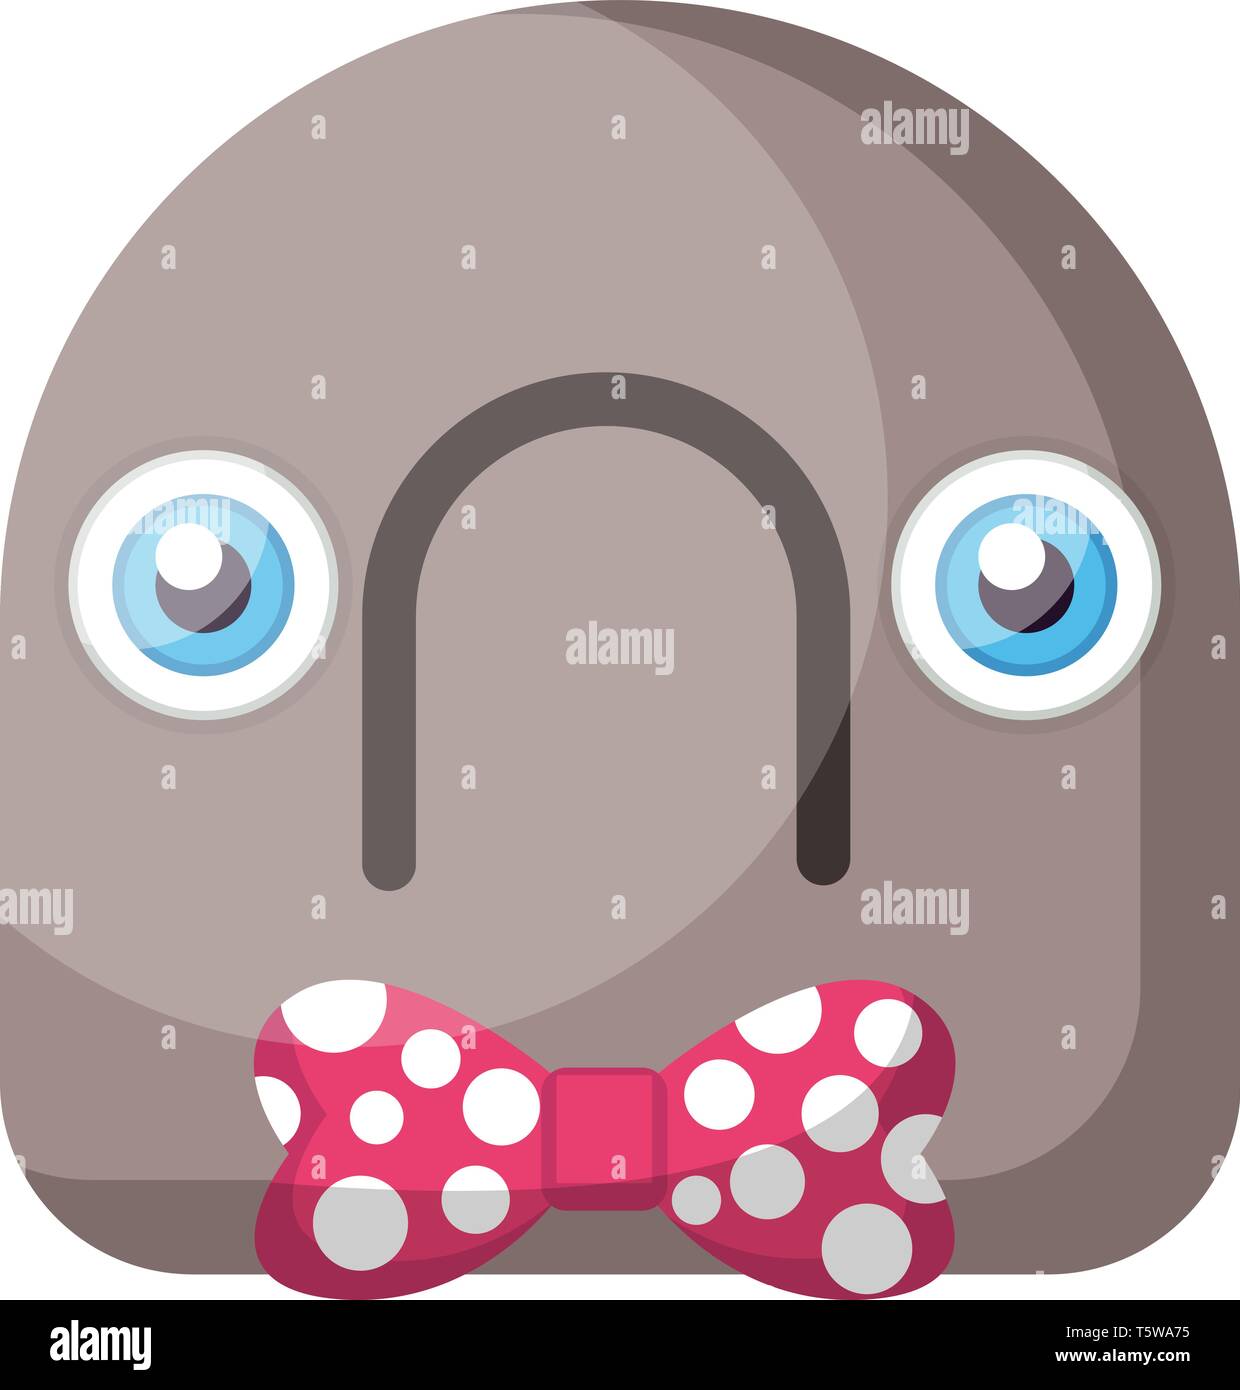 Emoji rond gris avec visage triste et noeud rose vector illustration sur  fond blanc Image Vectorielle Stock - Alamy